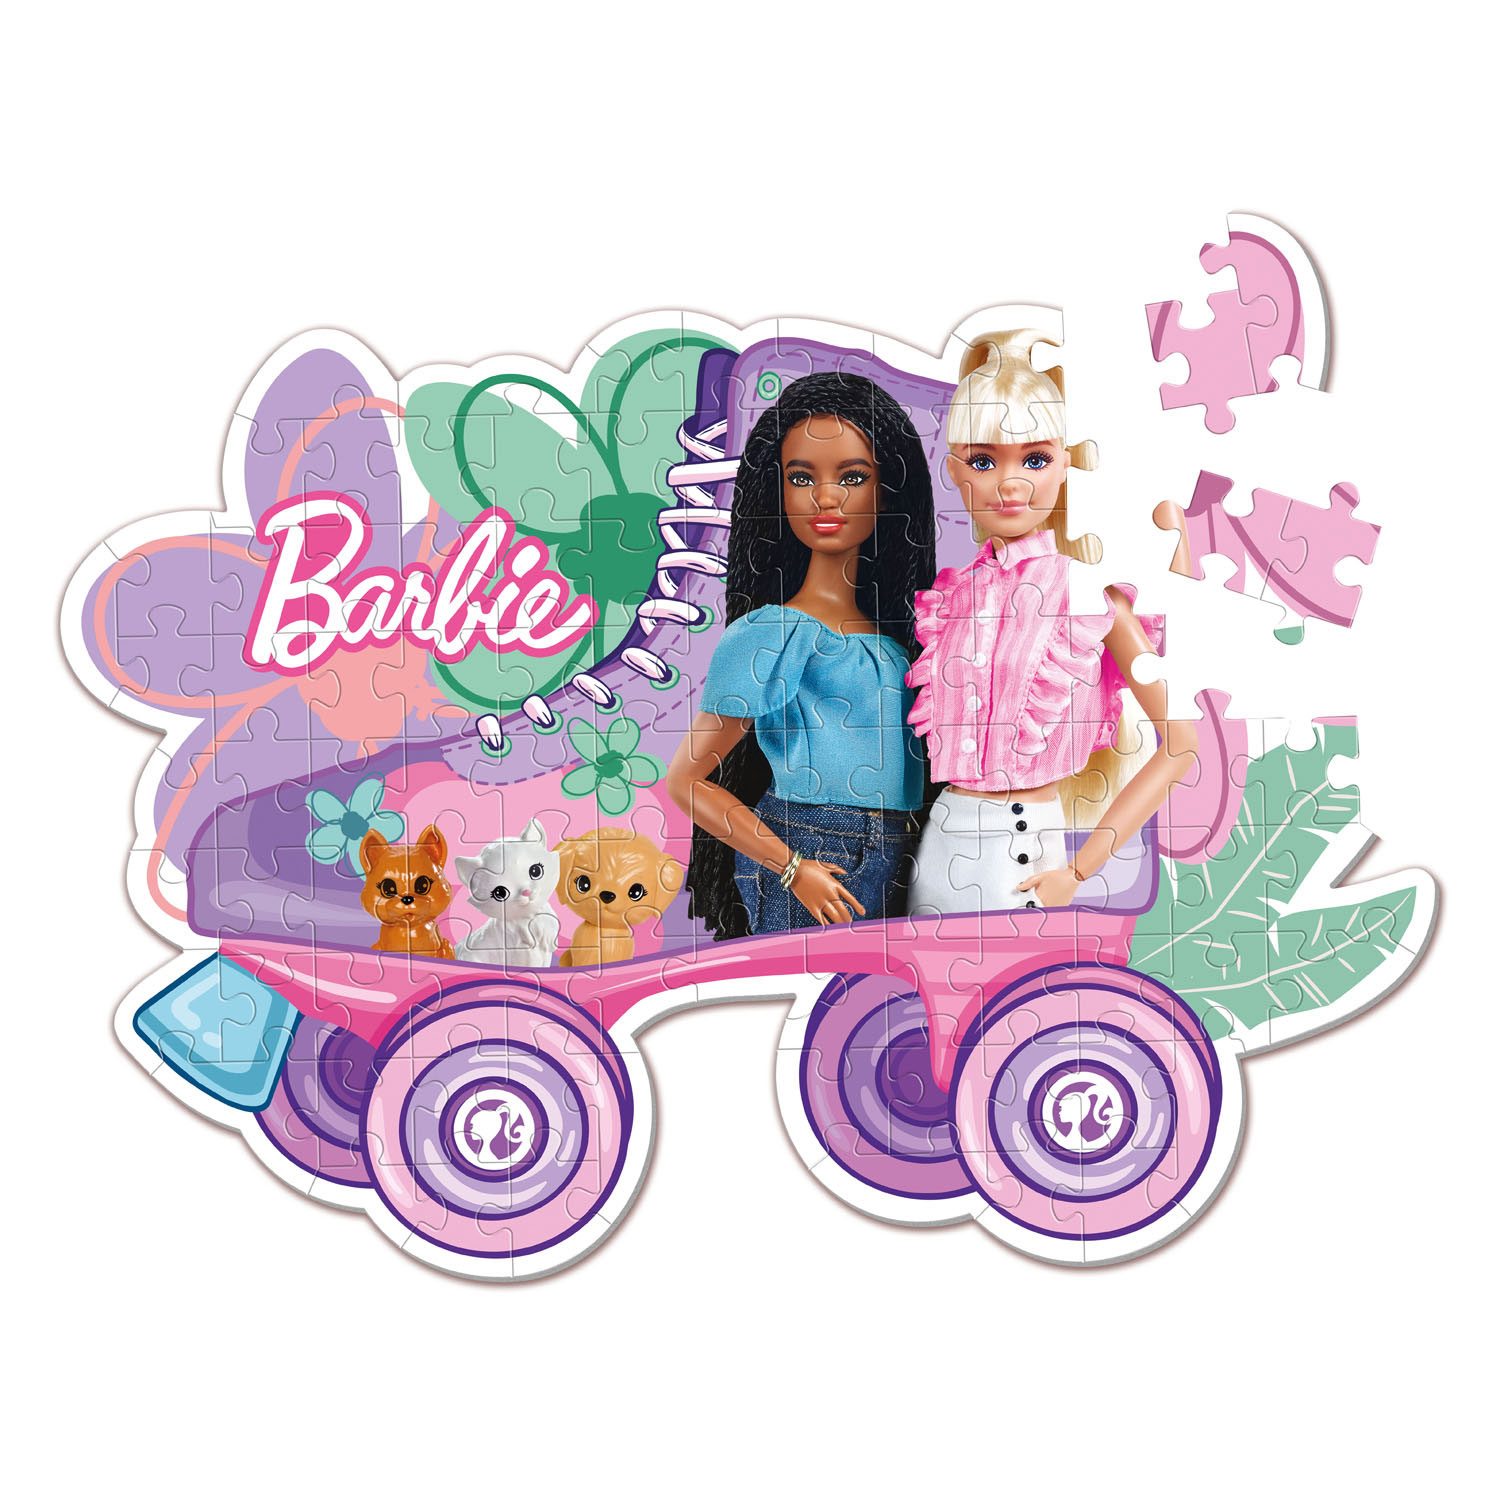 Clementoni Puzzle Super Color – Barbie Rollschuh, 104 Teile.